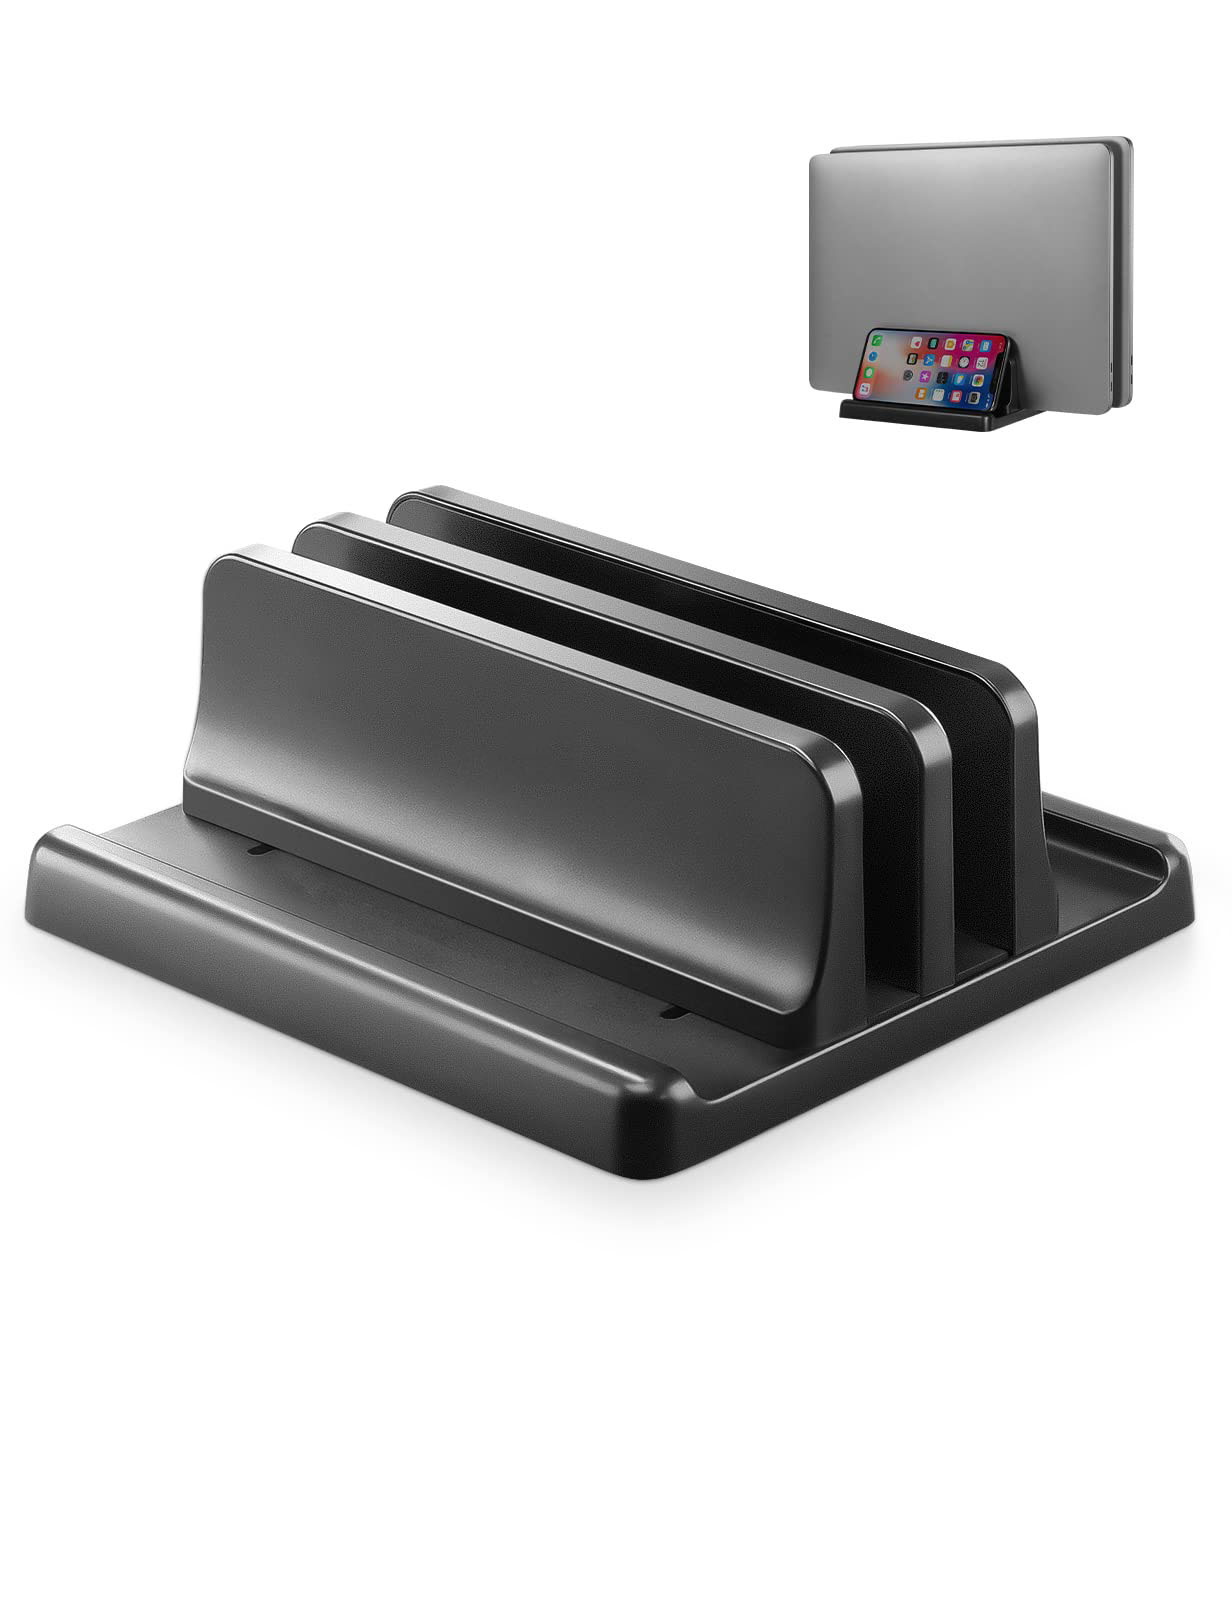 ノートパソコン スタンド PCスタンド 縦置き 2台収納 ホルダー幅調整可能 ABS樹脂製 タブレット/ipad/MacBook Pro Air 縦置き用- ブラック